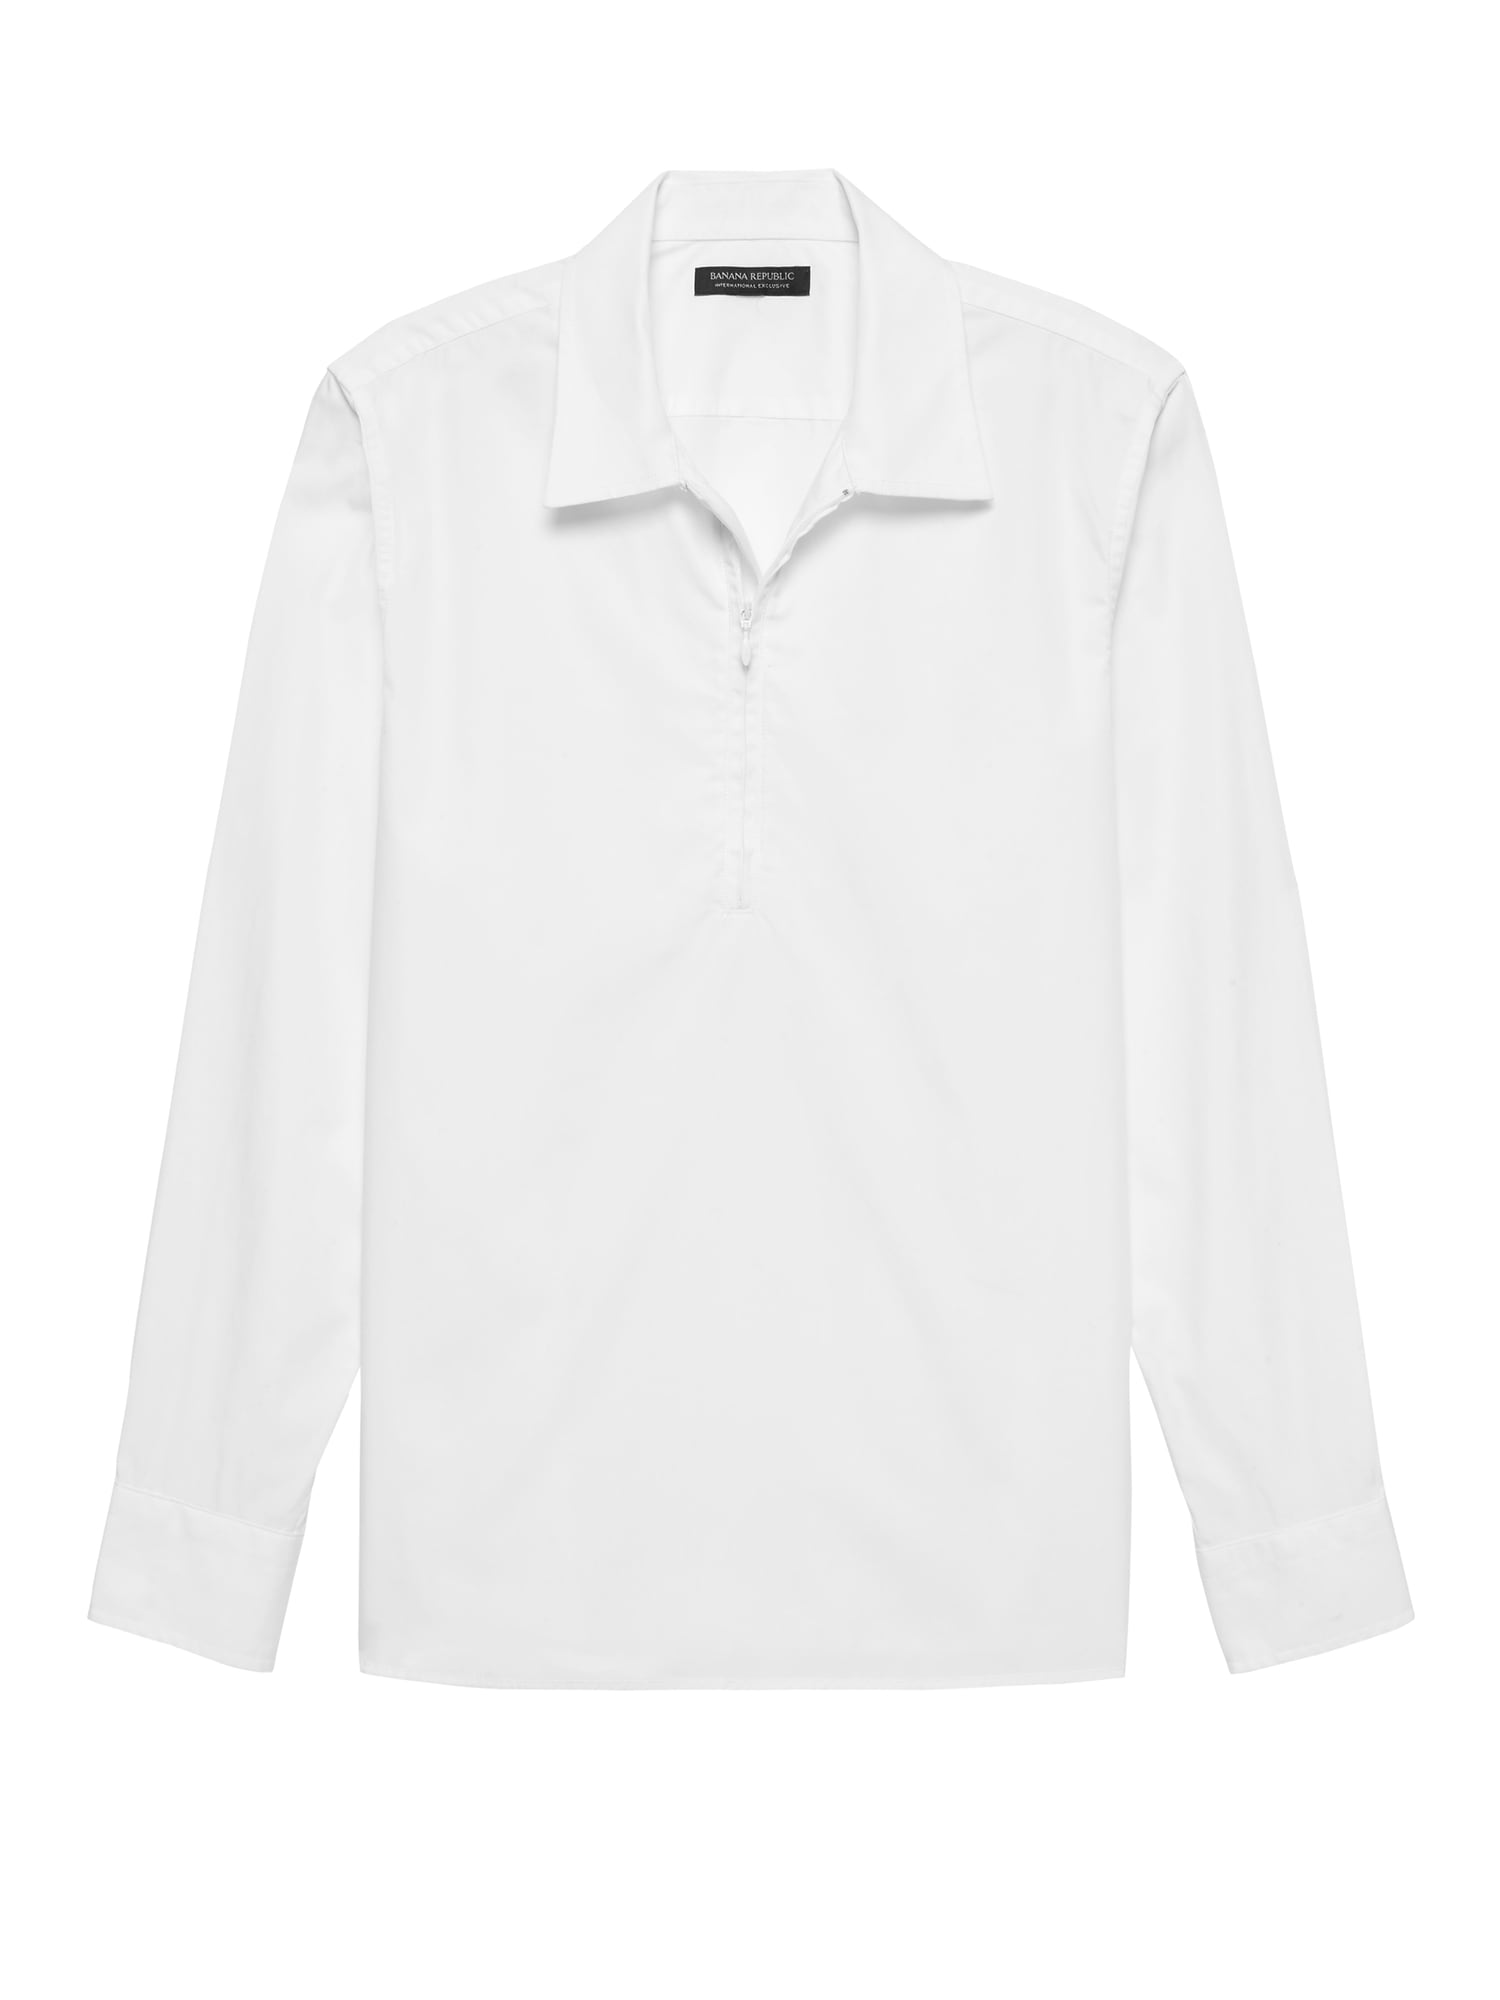 JAPAN EXCLUSIVE Oversized Luxe Poplin Half-Zip Shirt